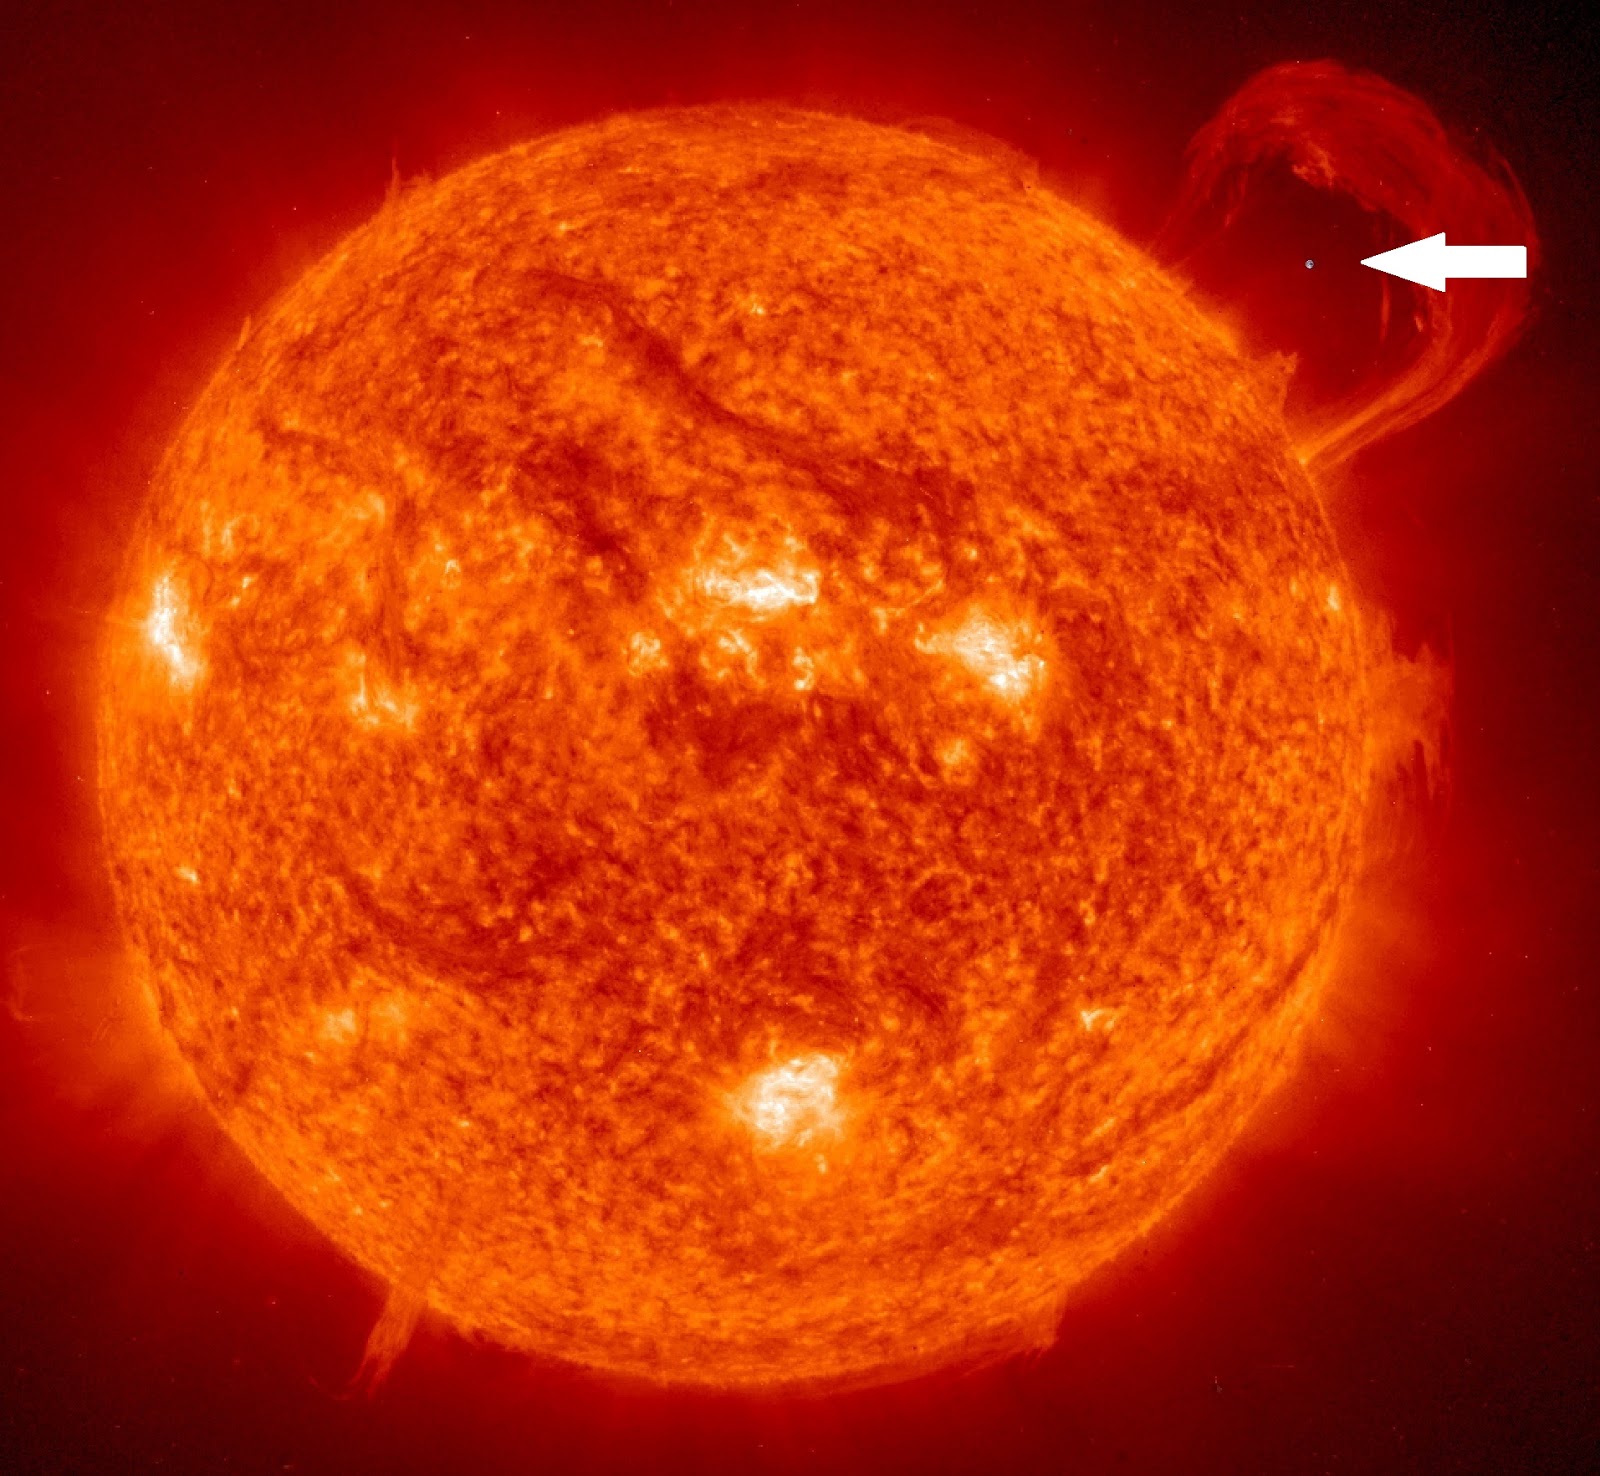 Earth compared to Sun